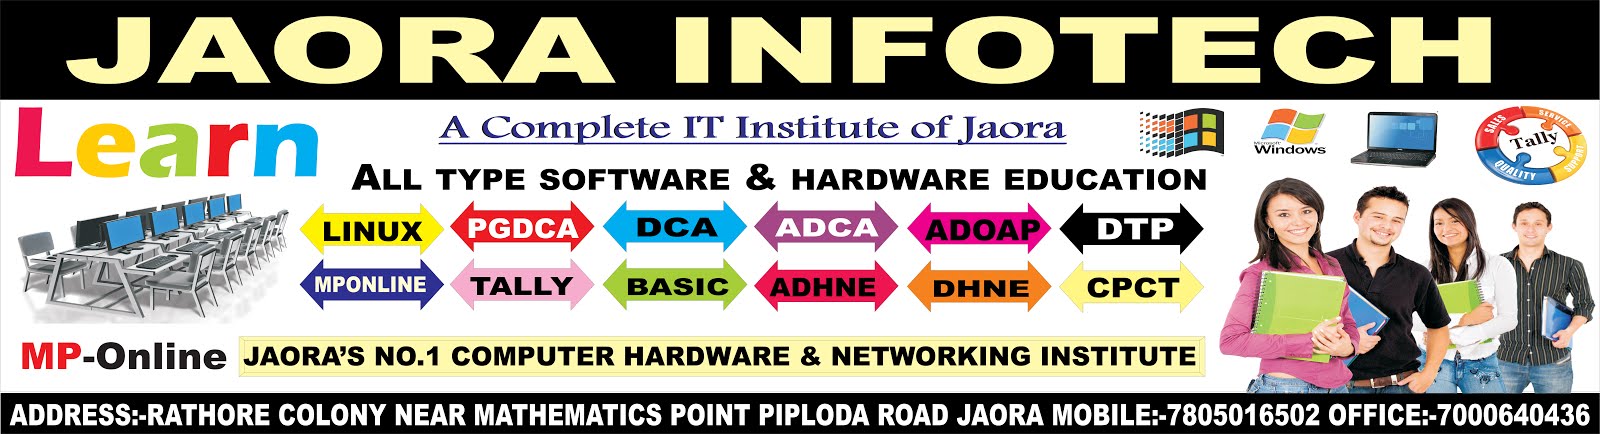 a complete IT institute of jaora